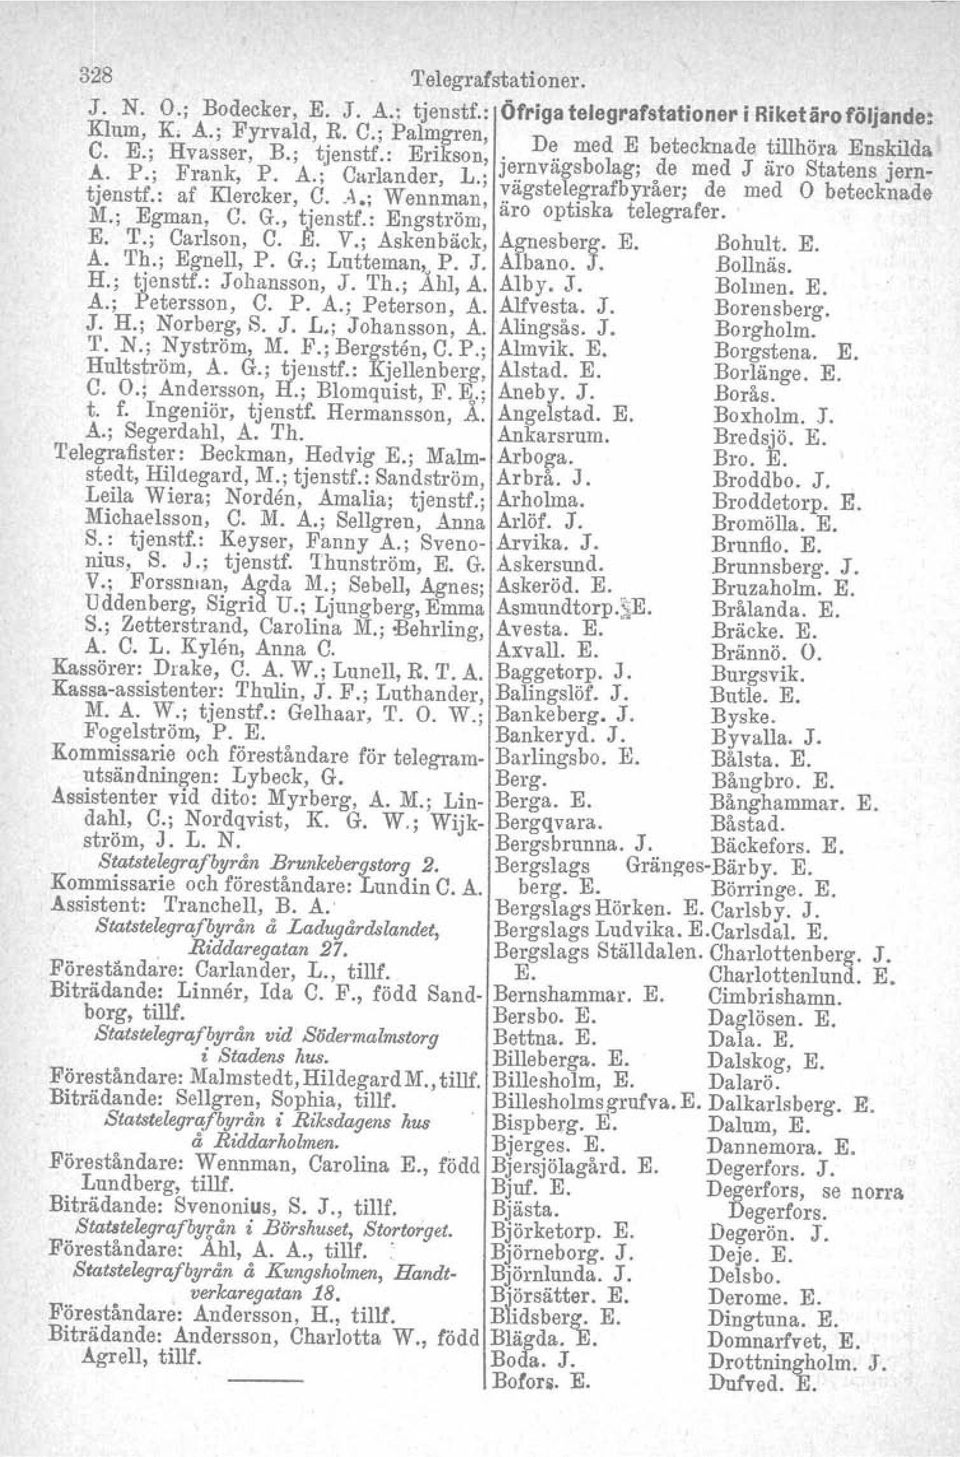 ; Egman, C. G., tienstf.: Engström, aro optiska telegrafer. E. T.; Carlson, C.,~. V.; Askenbäck, Agnesberg. E. Bohu~~. E. A. Th.; Egnell, P. G.; Lntteman, P. J. Albano. J. Bollnas. H.; tjenstf.